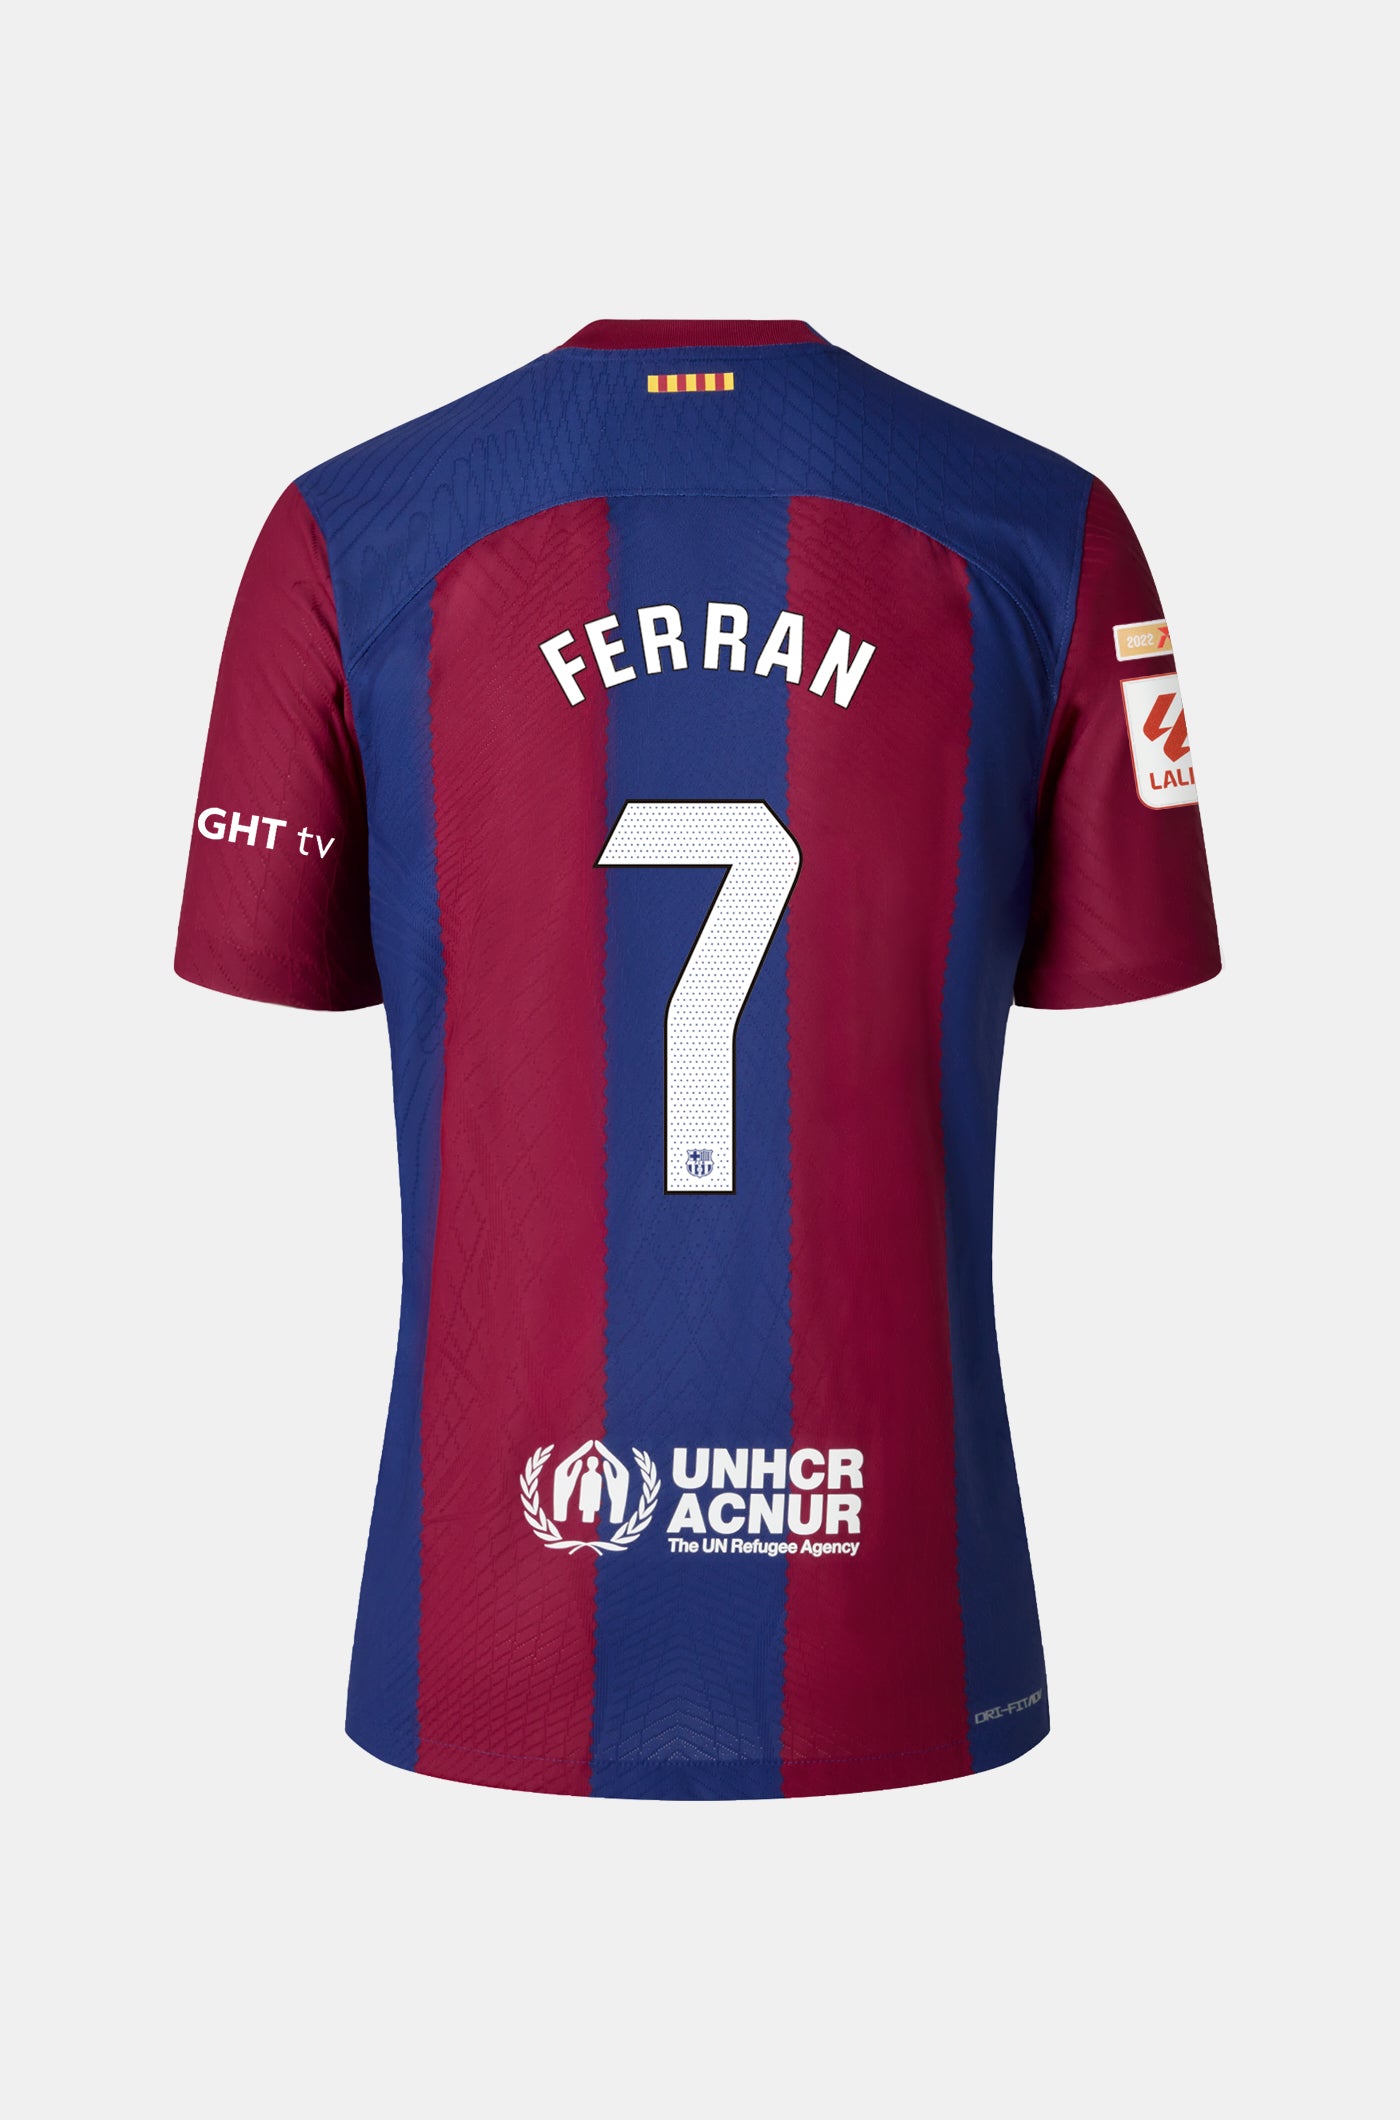 LFP FC Barcelona Home Shirt 23/24 Player's Edition - Women - FERRAN